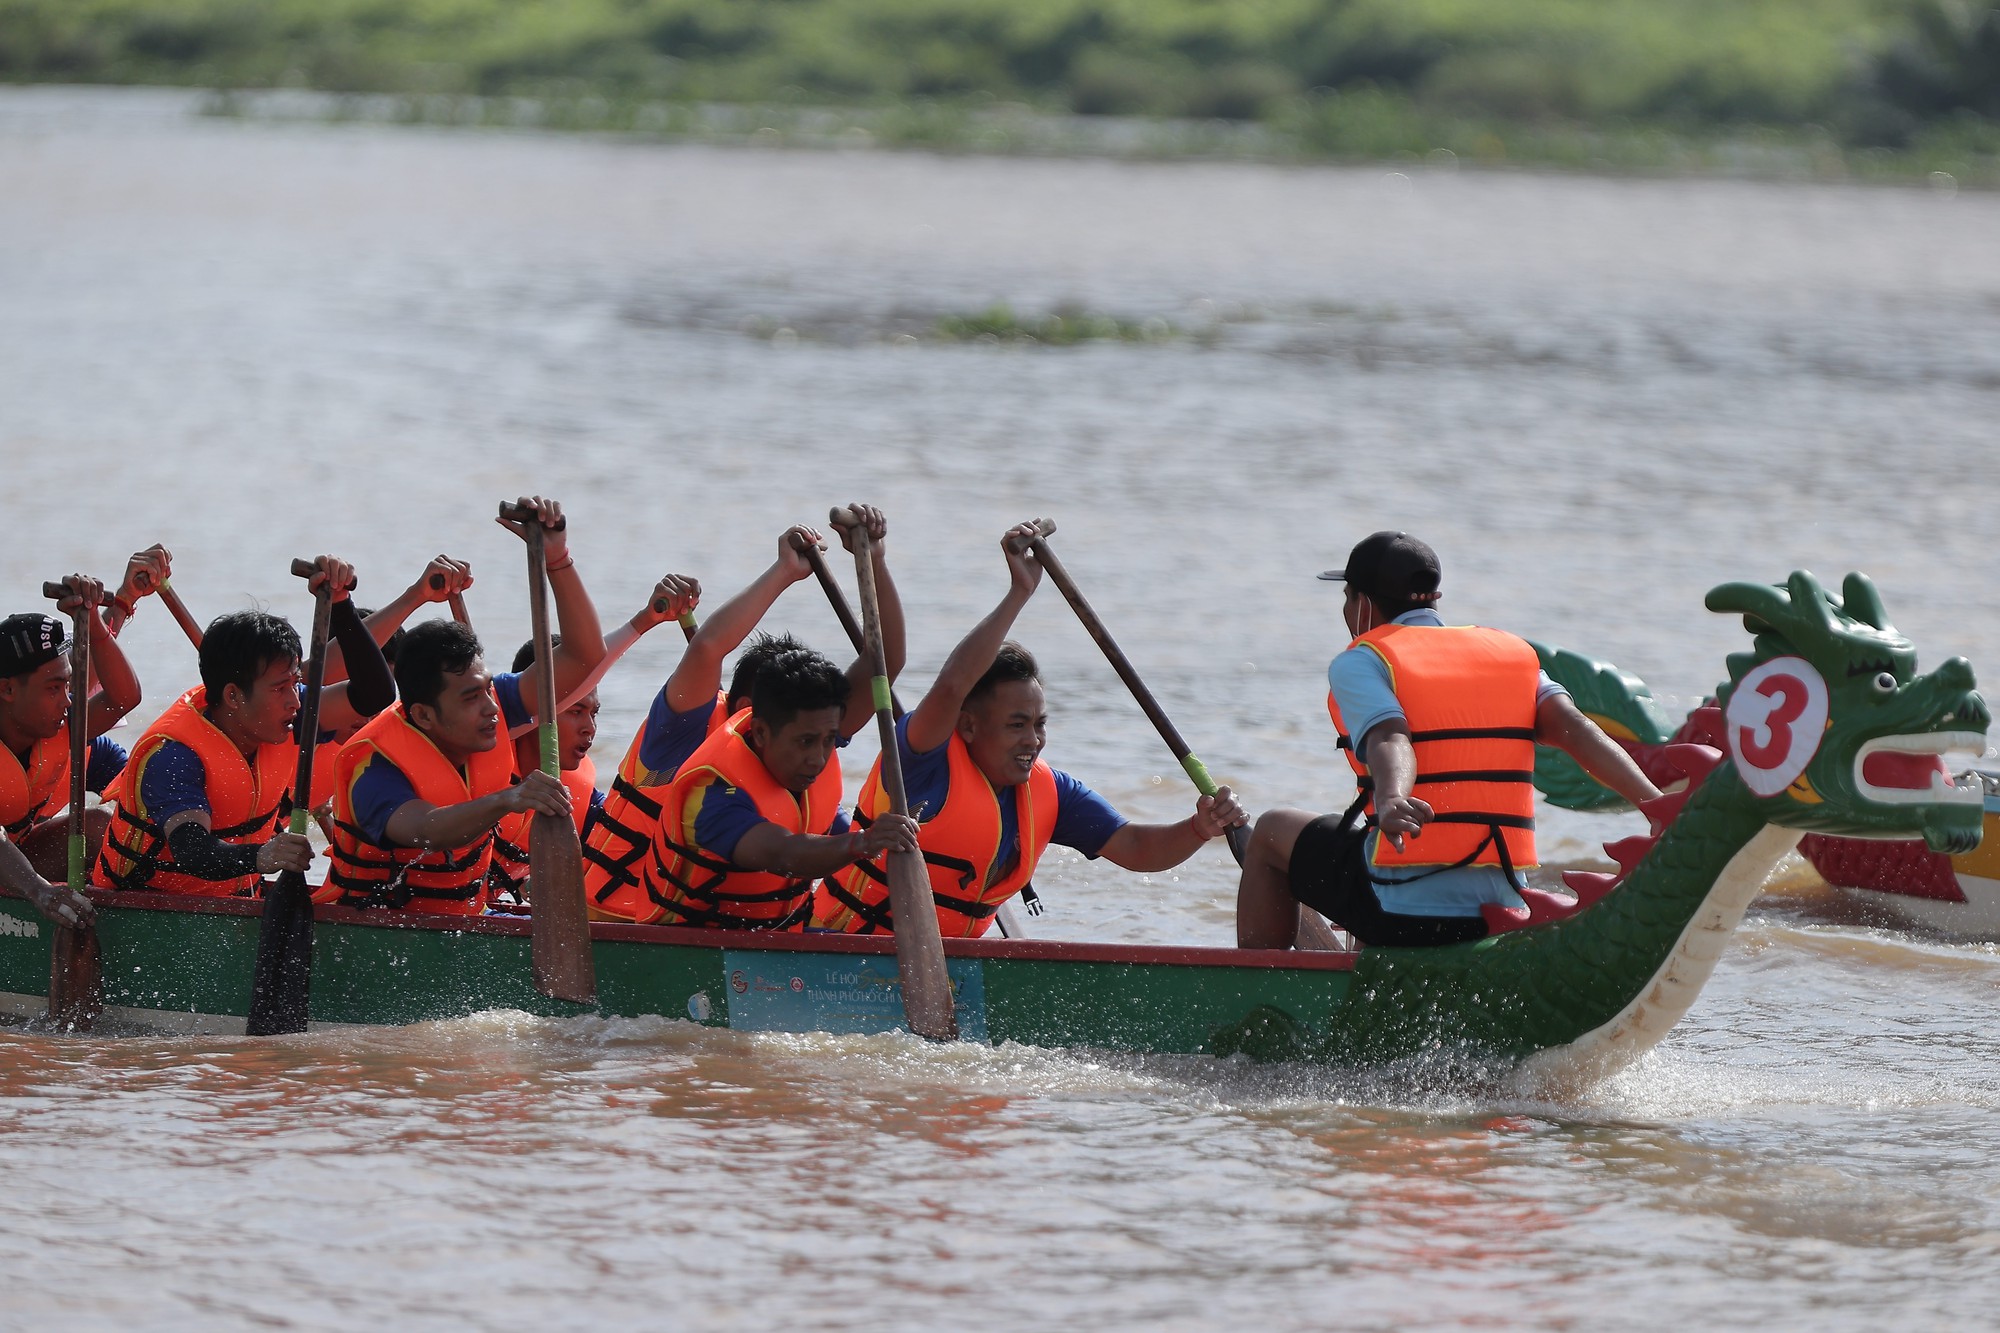 Sông Sài Gòn dậy sóng với giải đua thuyền truyền thống và trình diễn thể thao sông nước - Ảnh 3.